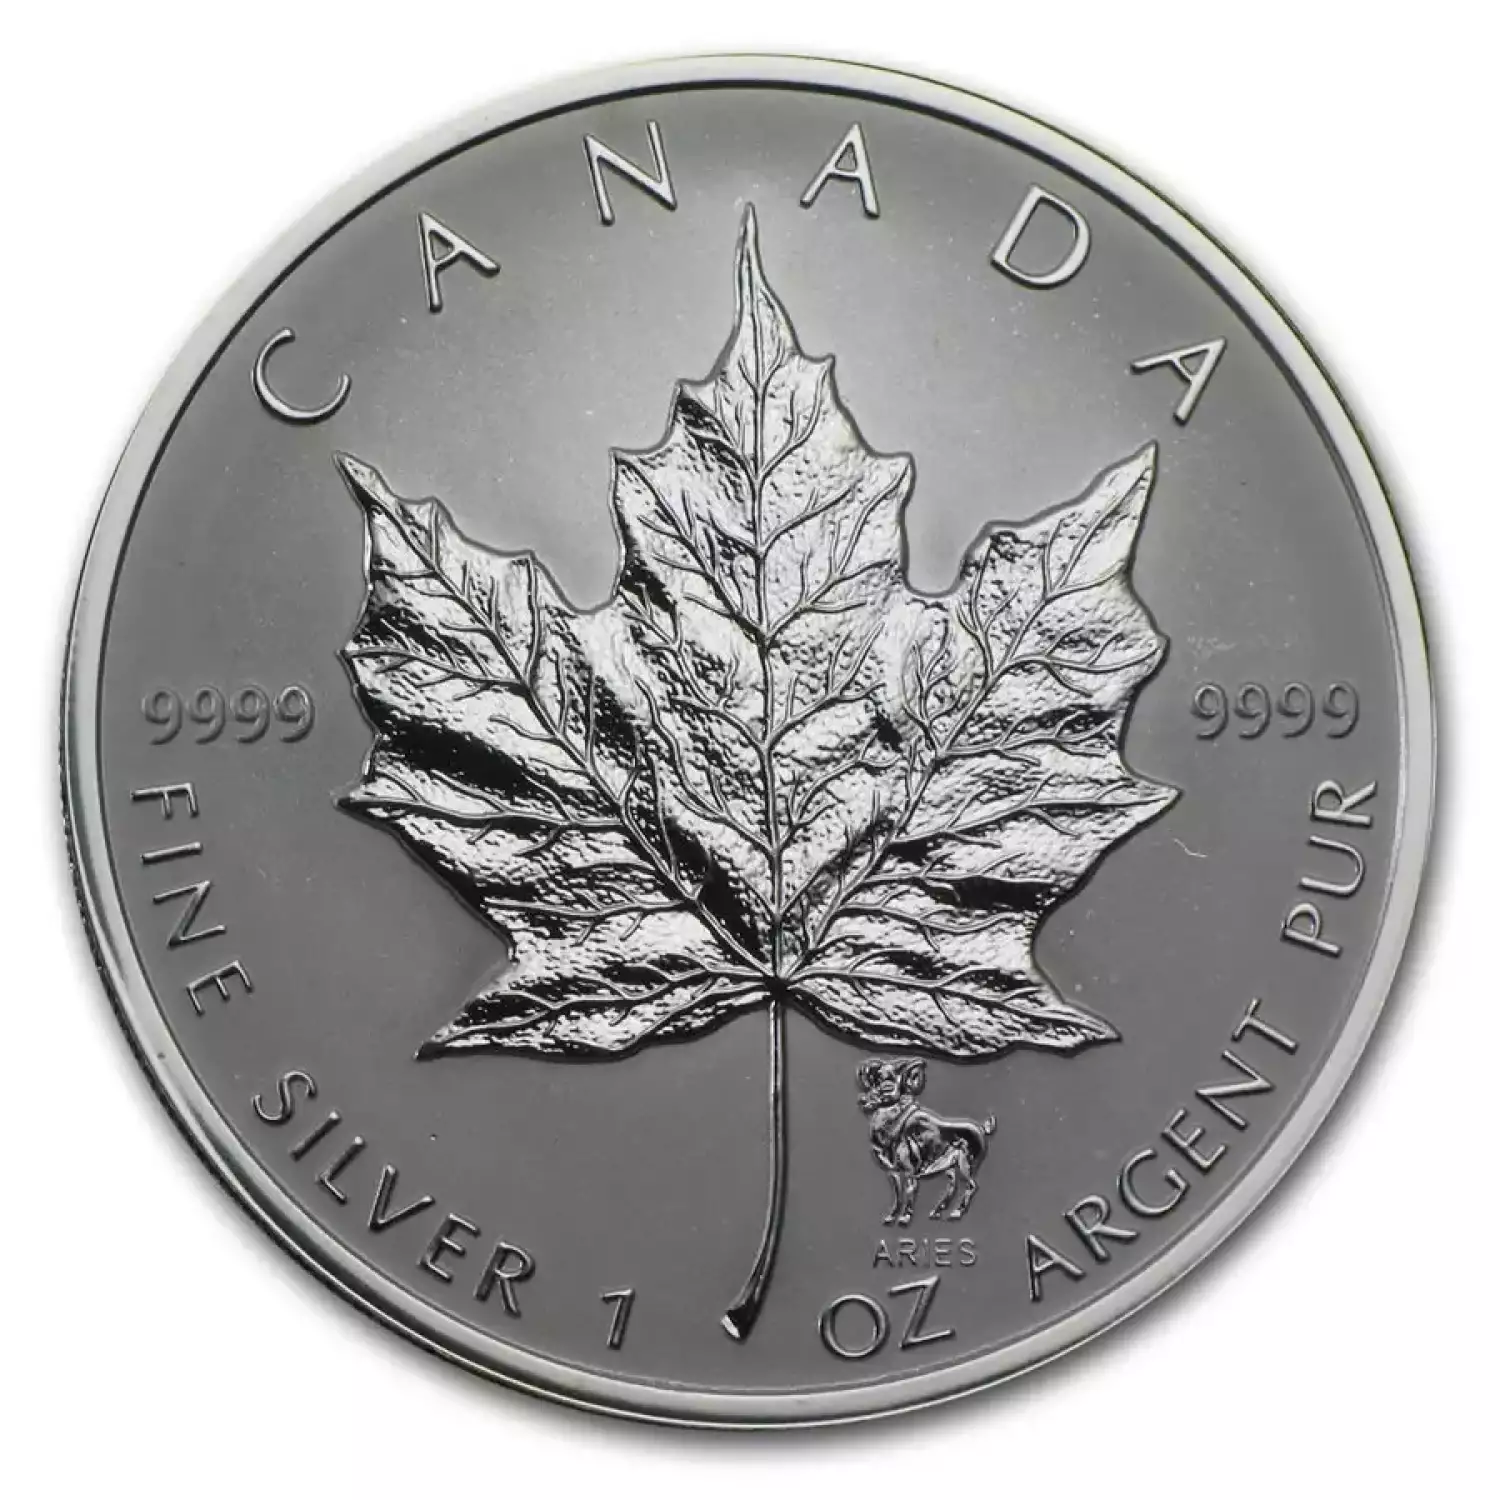 2004 1oz Canadian Silver Maple Leaf Aries Zodiac Privy